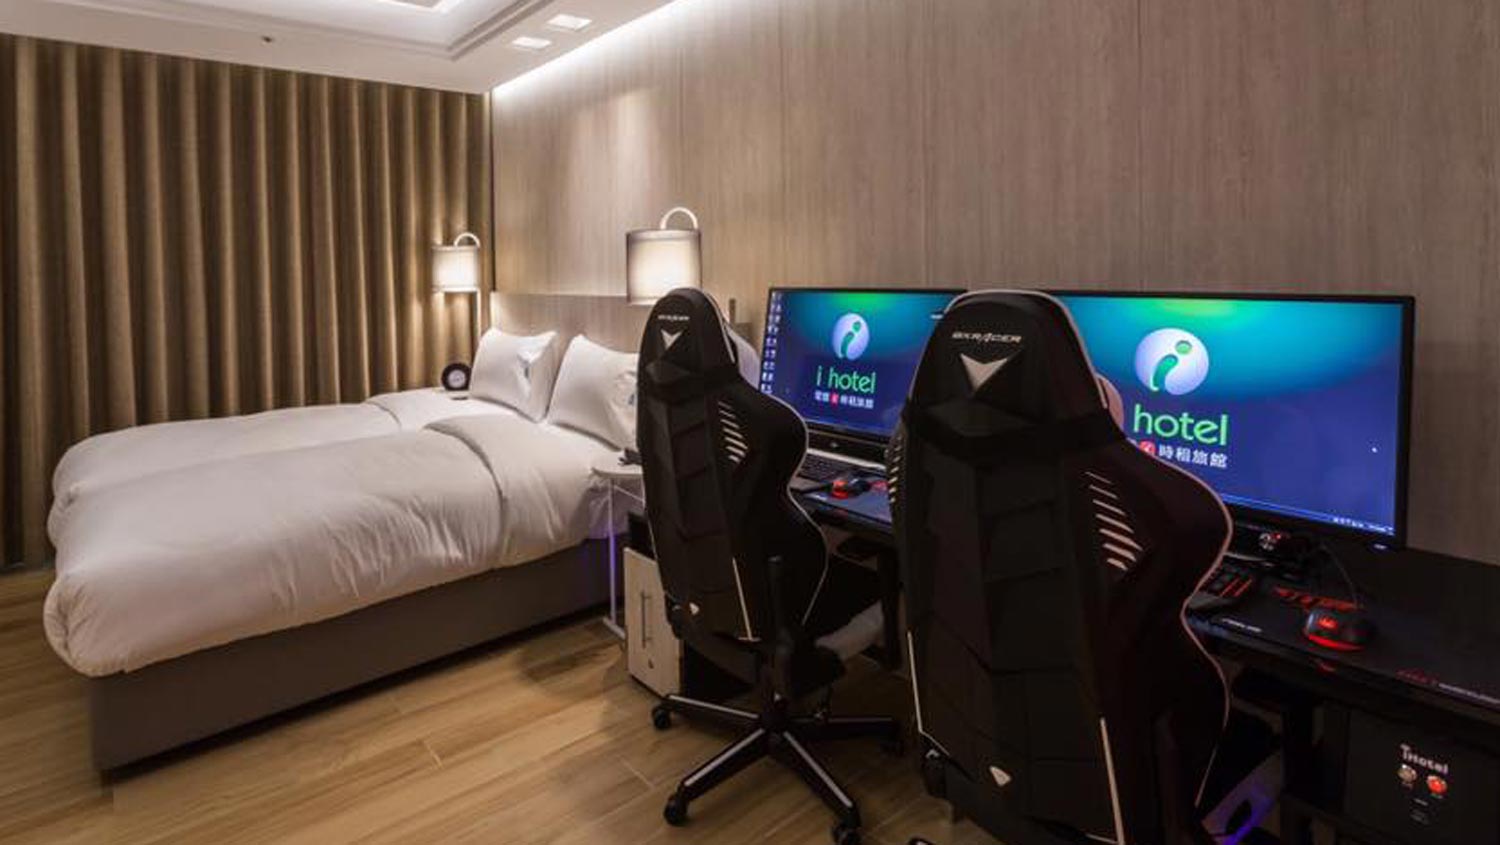 i Hotel – Hotel Yang Dilengkapi Komputer Gaming Di Setiap Bilik